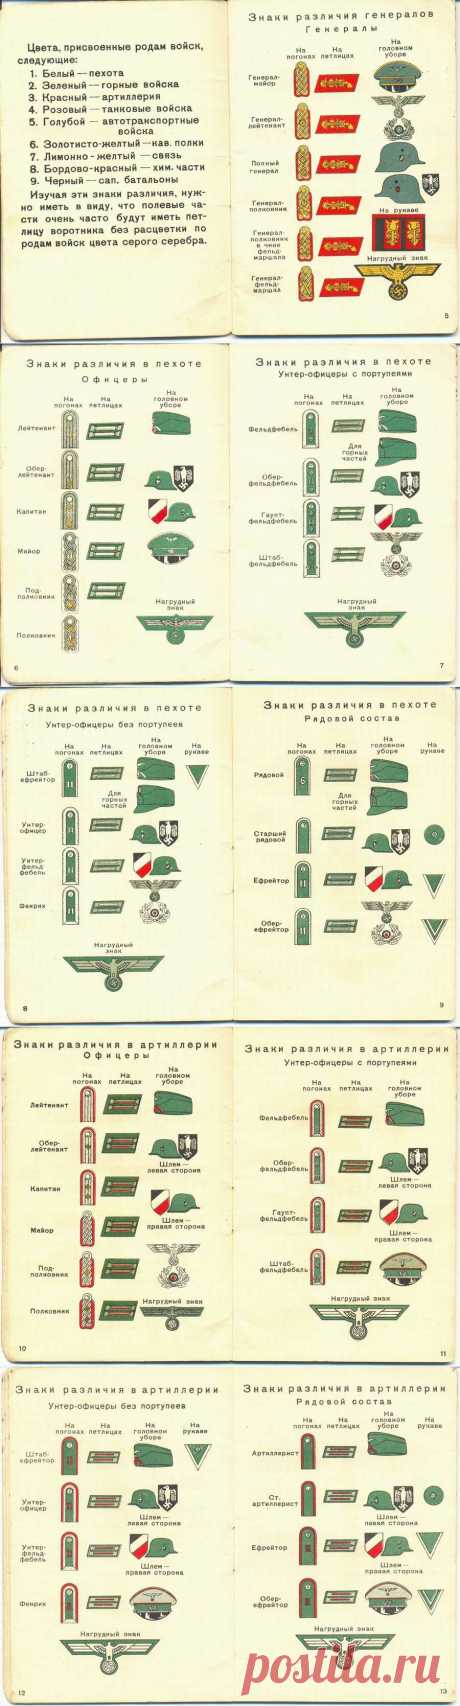 Какие знаки различия были у немецкой армии в 1941 году | Разно Всяко